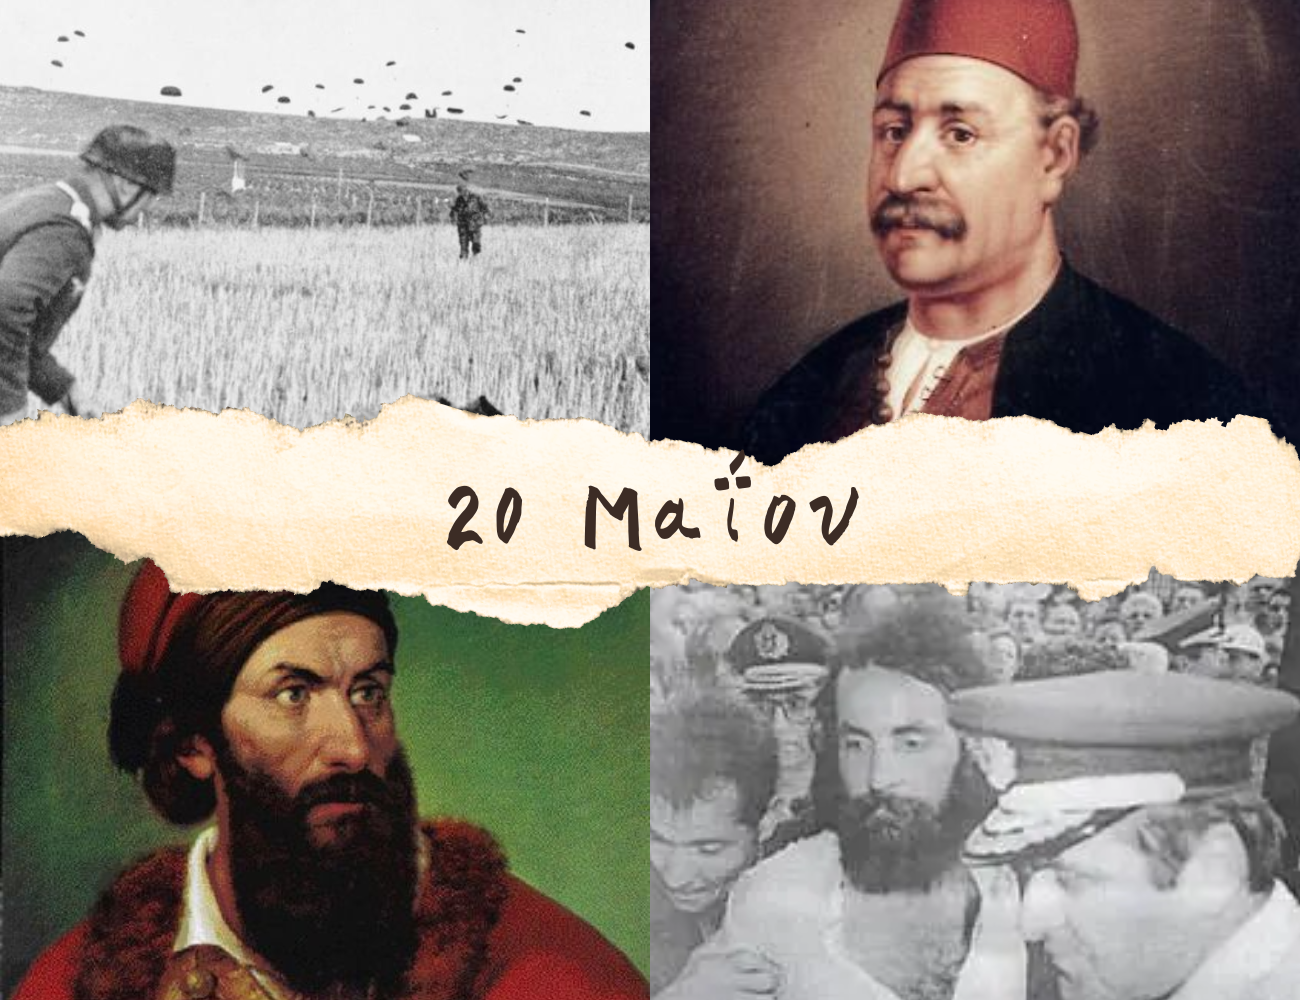 10 γεγονότα που συνέβησαν σαν σήμερα, 20 Μαΐου. Μάχη της Κρήτης, Παπαφλέσσας και το πενταπλό έγκλημα του Σεχίδη